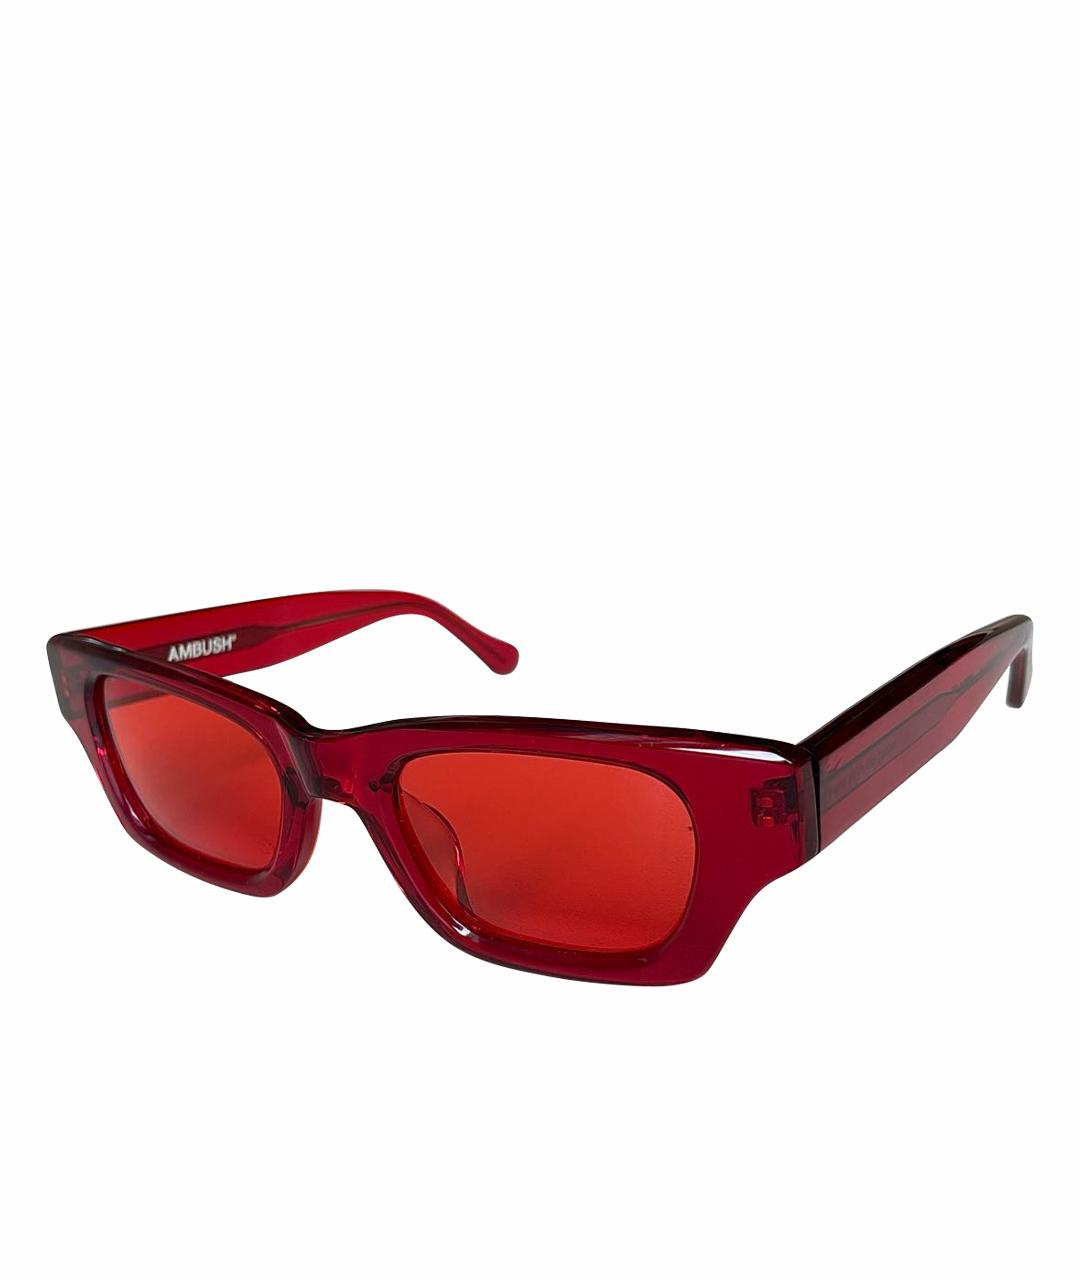 AMBUSH Красные пластиковые солнцезащитные очки, фото 1